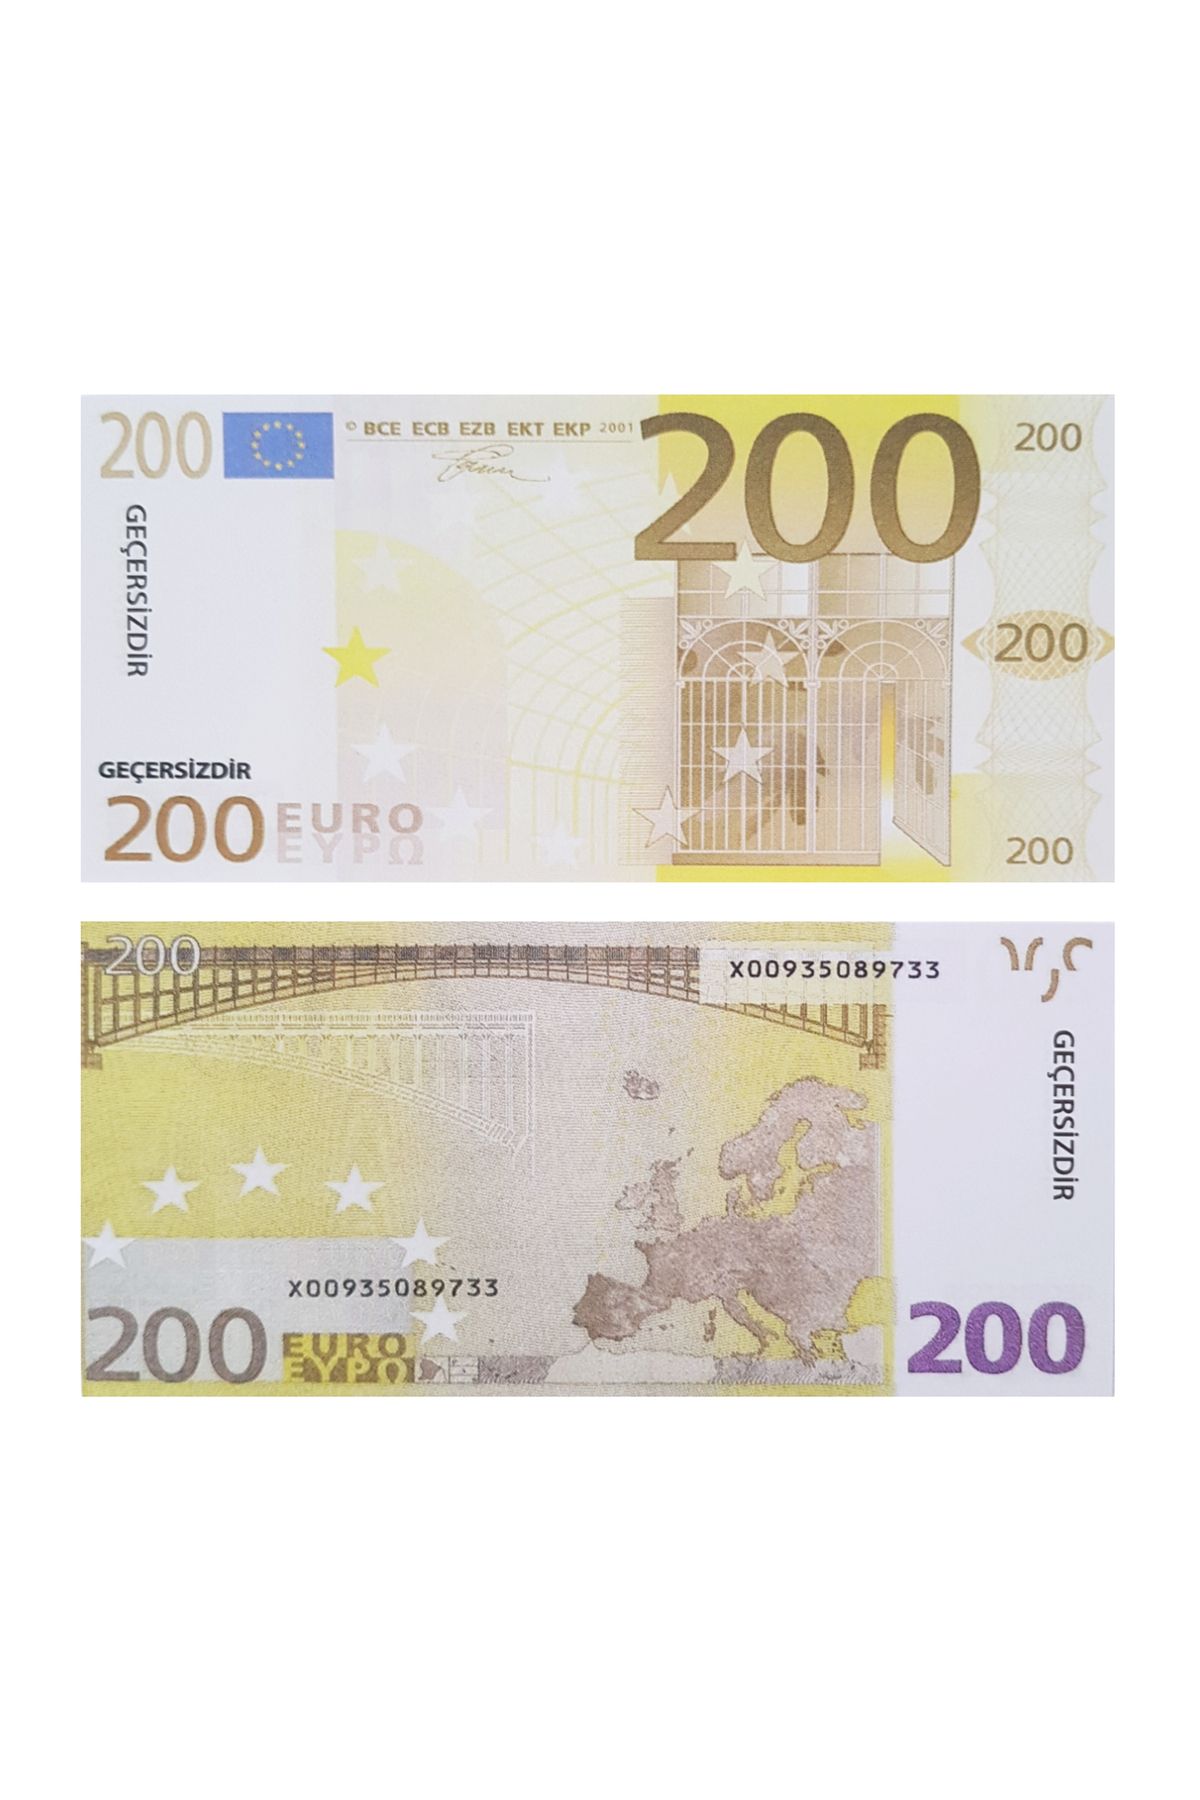 POPKONSOL Geçersiz Şaka Düğün Parası Sahte Para 100 Adet Oyun Parası 200 Euro